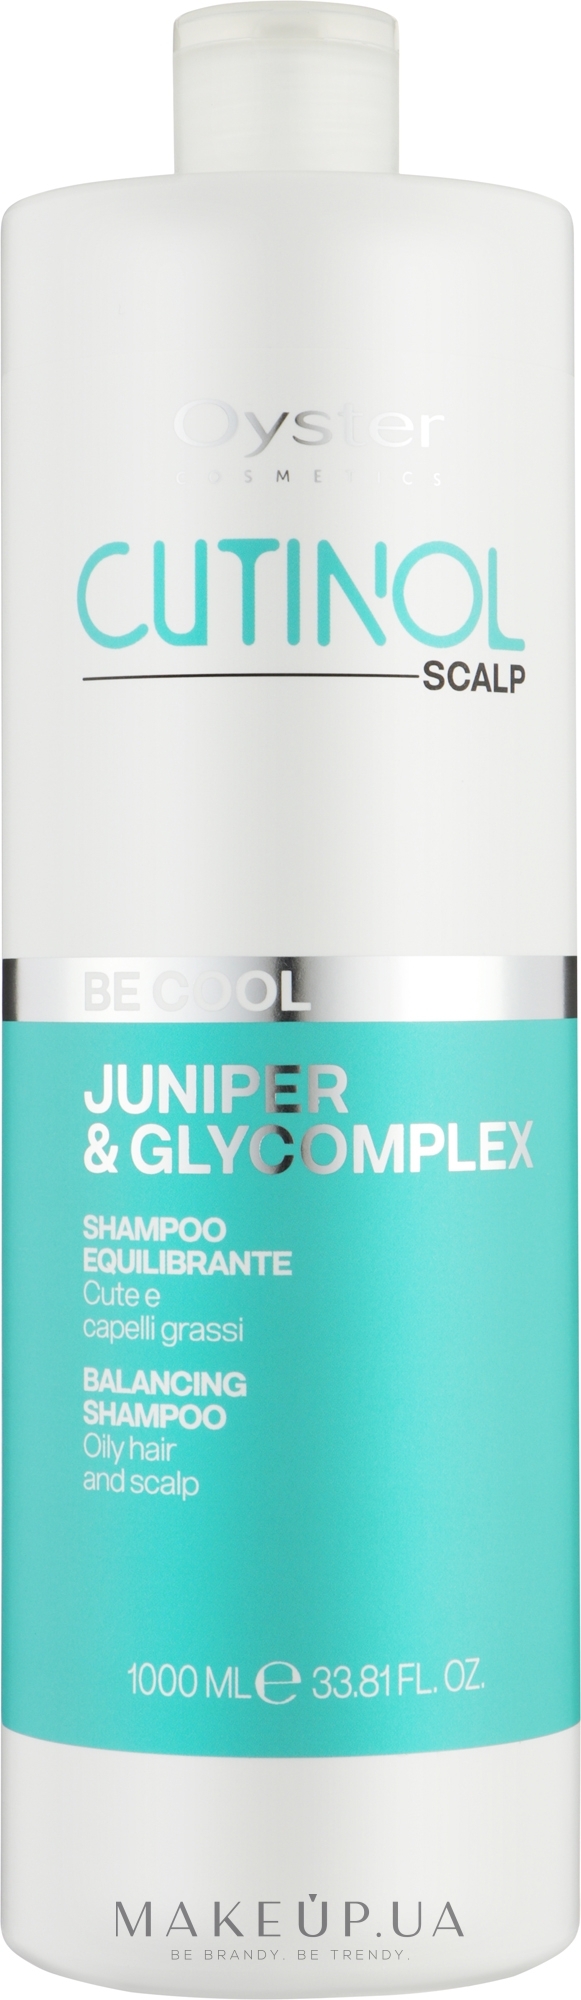 Шампунь для жирных волос и кожи головы - Oyster Cosmetics Cutinol Be Cool Shampoo — фото 1000ml